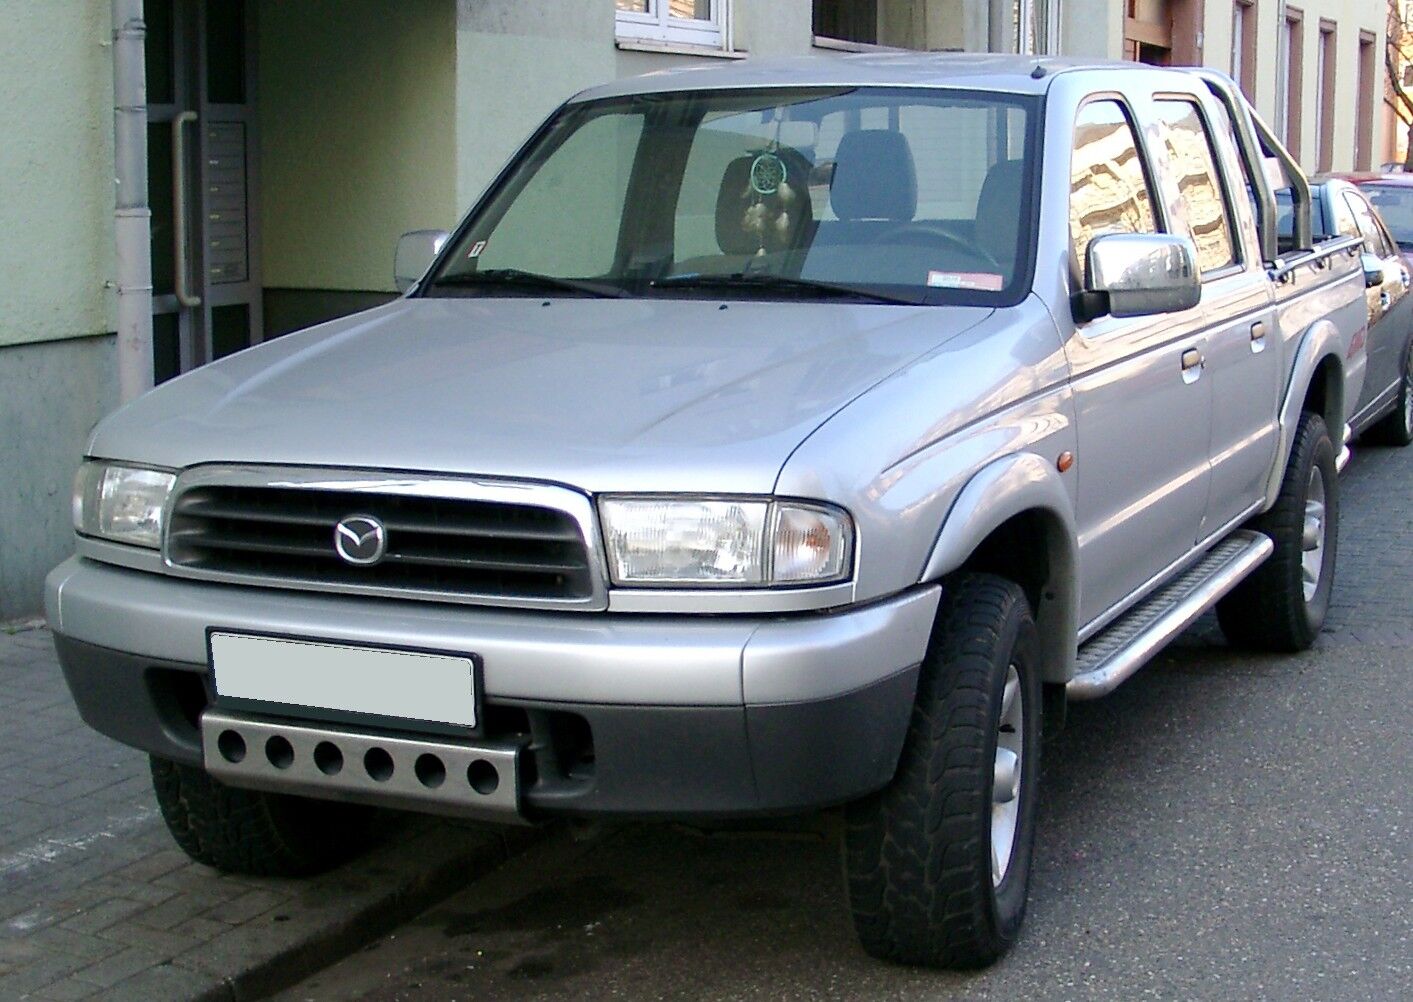 File:Mazda MX-30 rear.jpg - Wikipedia